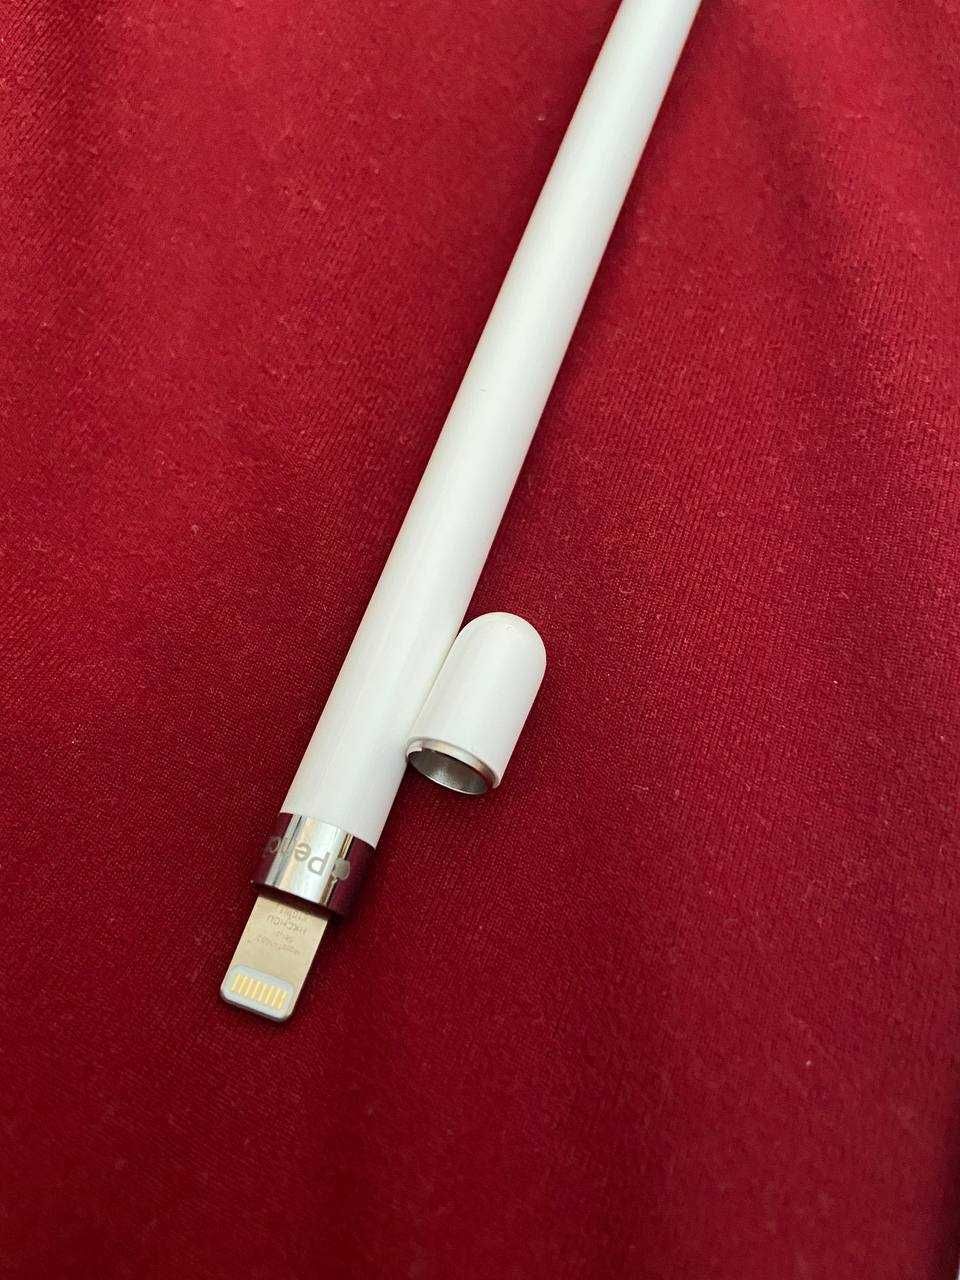 Pencil 1. Apple pencil 1 gen. original. Олівець apple pencil.